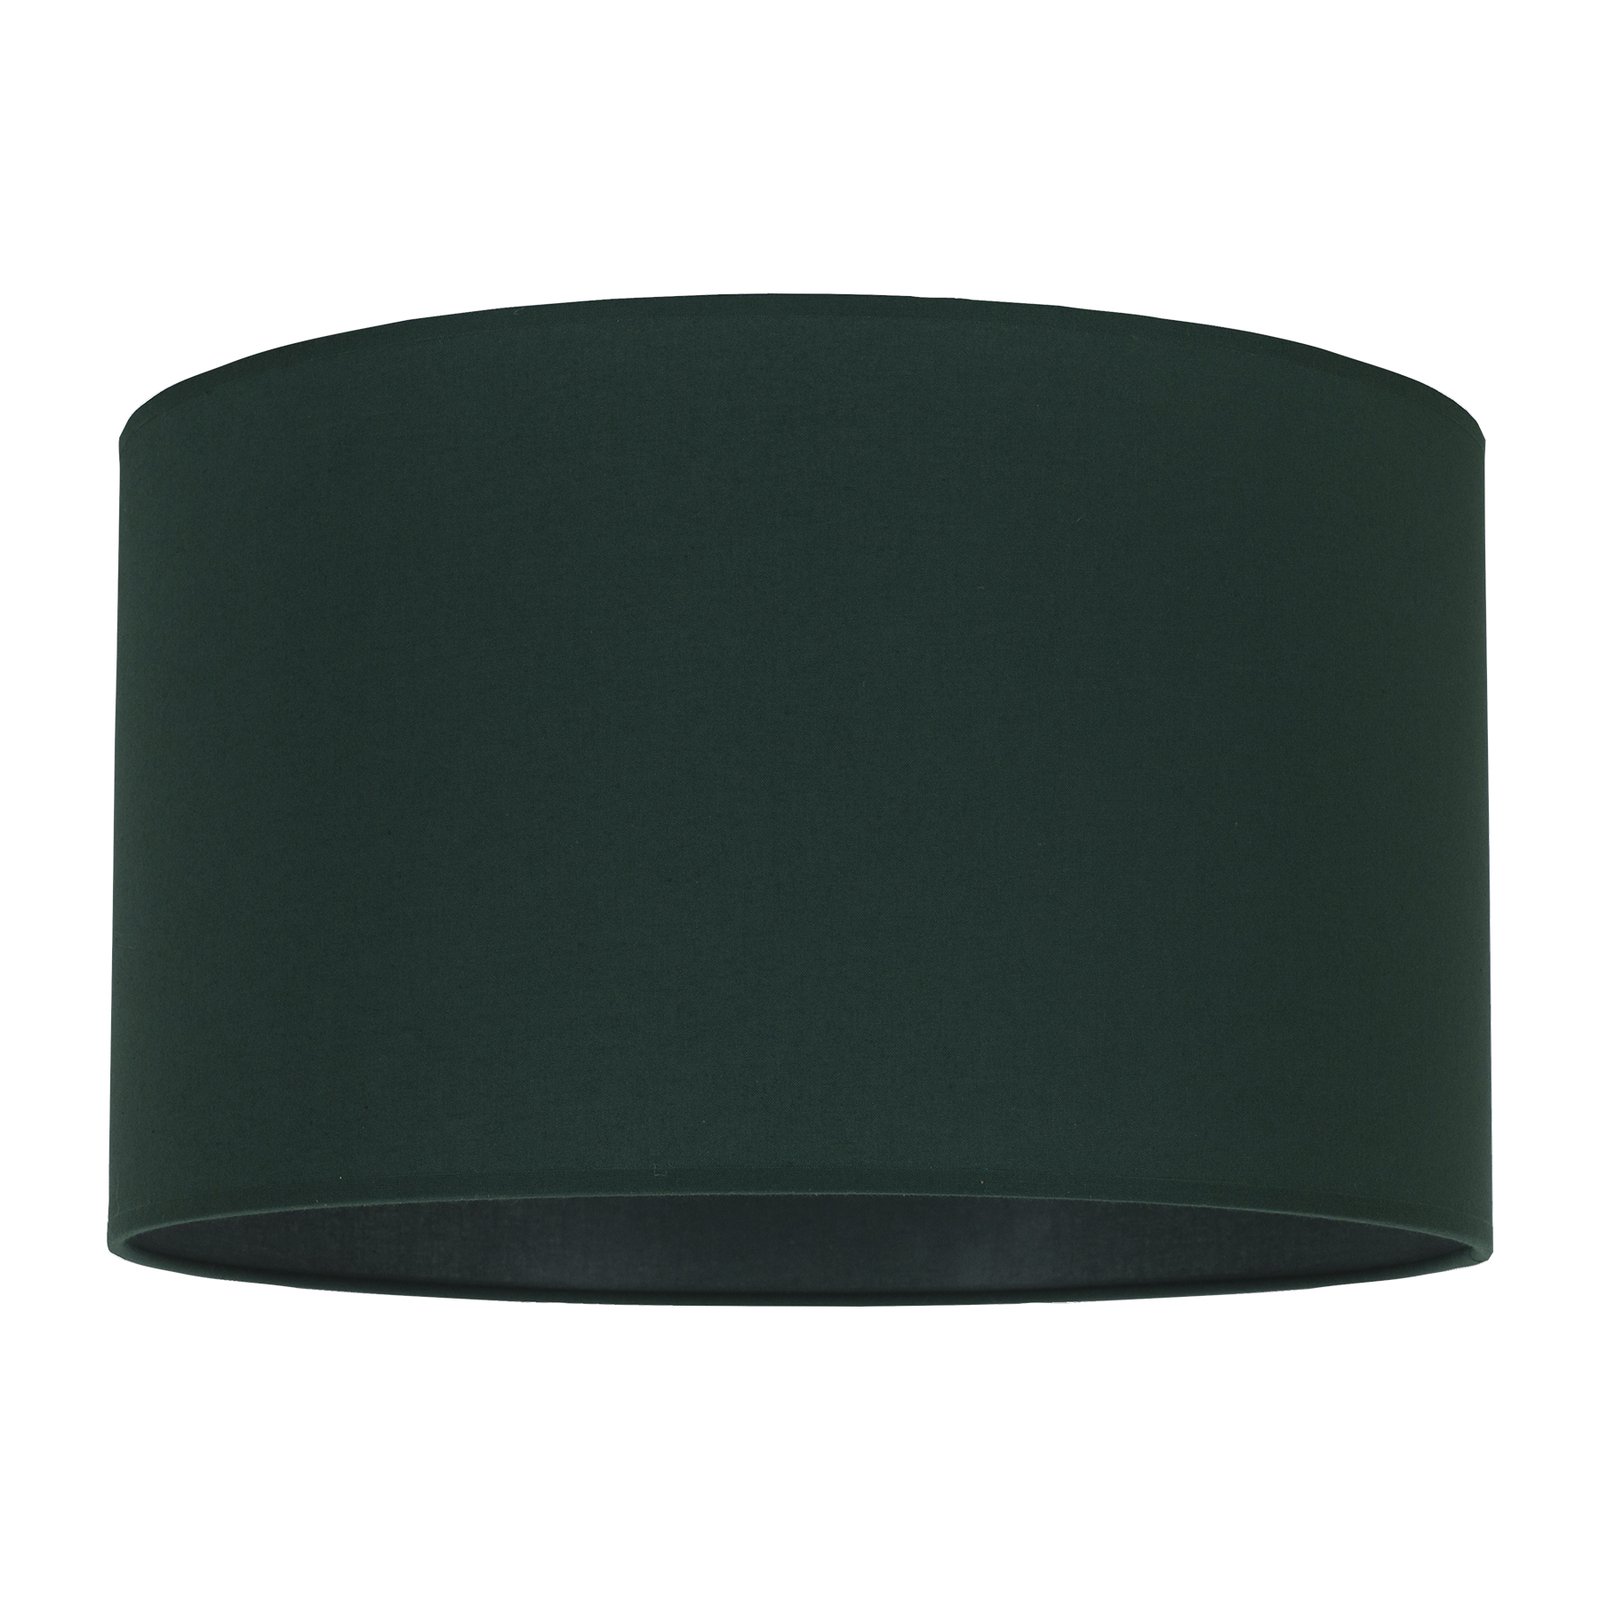 Lampeskjerm Roller, grønn, Ø 40 cm, høyde 22 cm